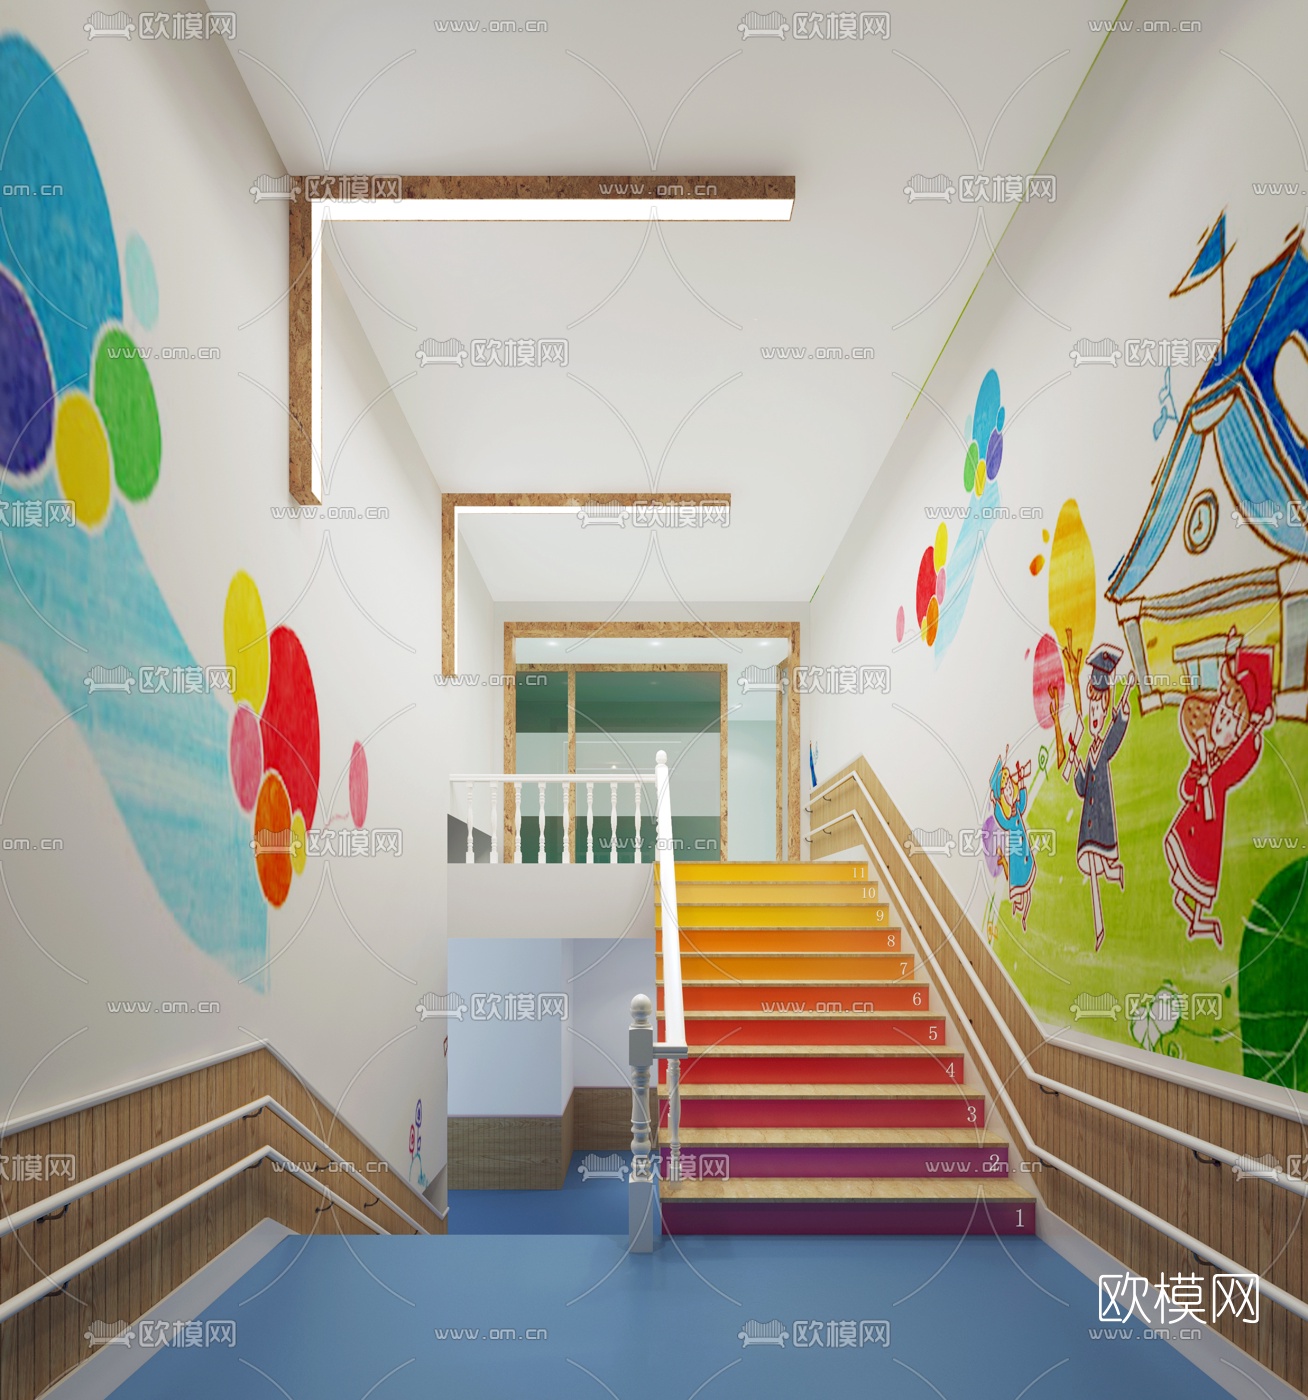 兴瑞幼儿园PVC楼梯整体踏步 - 郑州凯尚建材有限公司